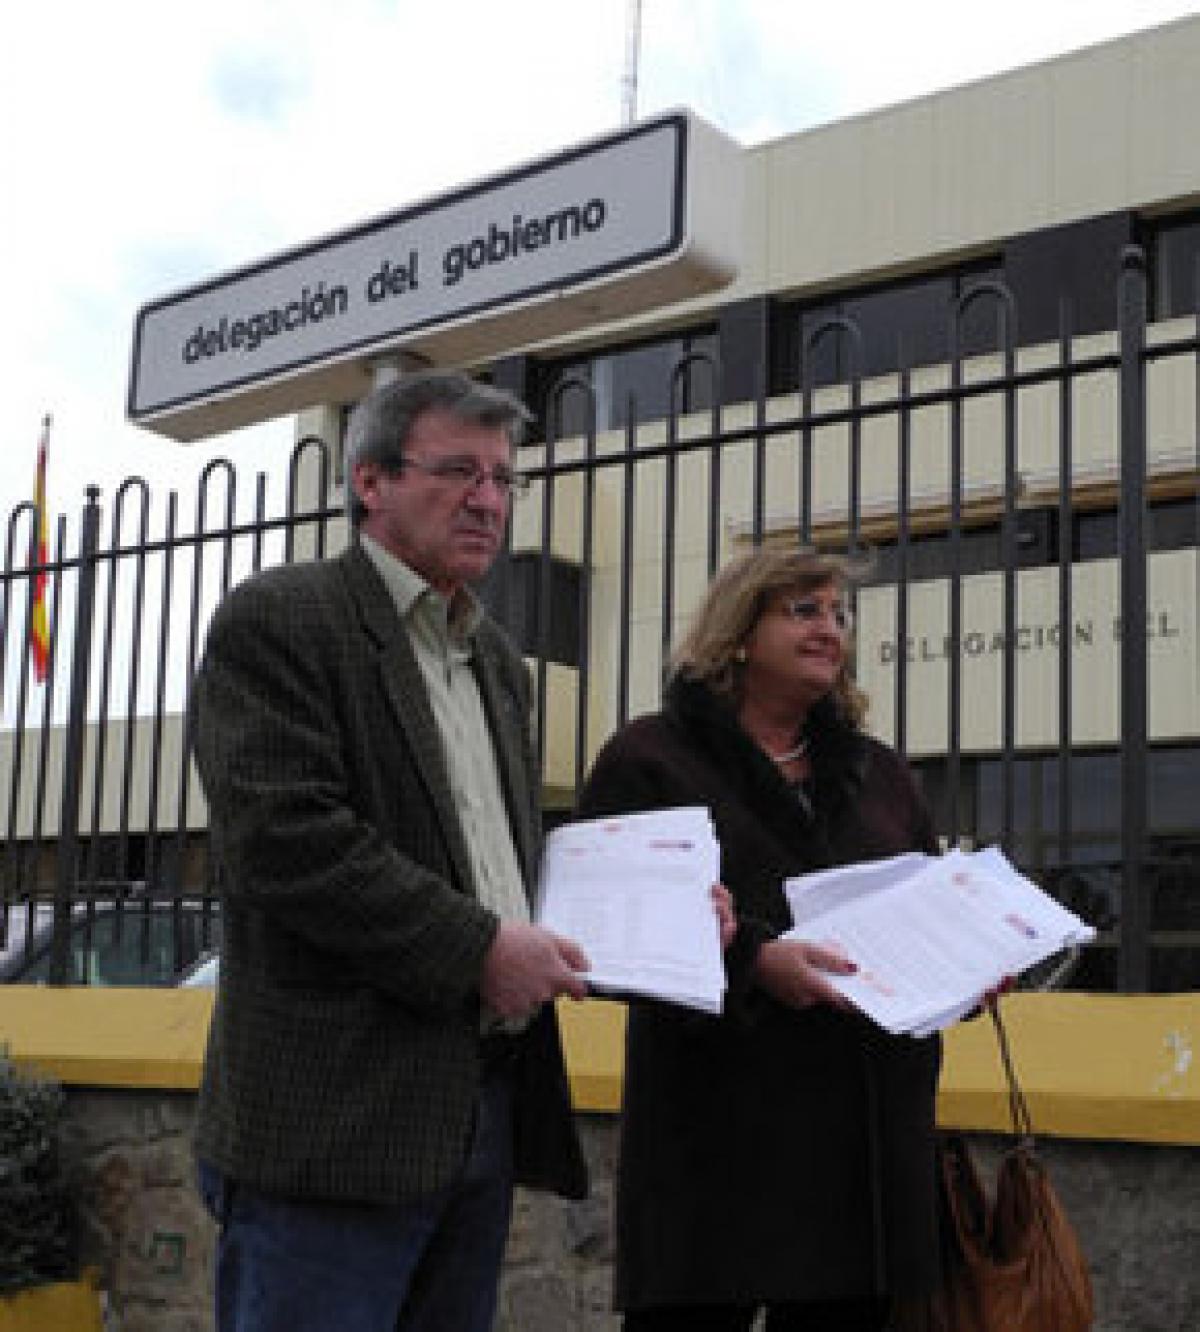 C. Navarro y Alonso Díaz oficializaron ayer la convocatoria de la huelga 29M